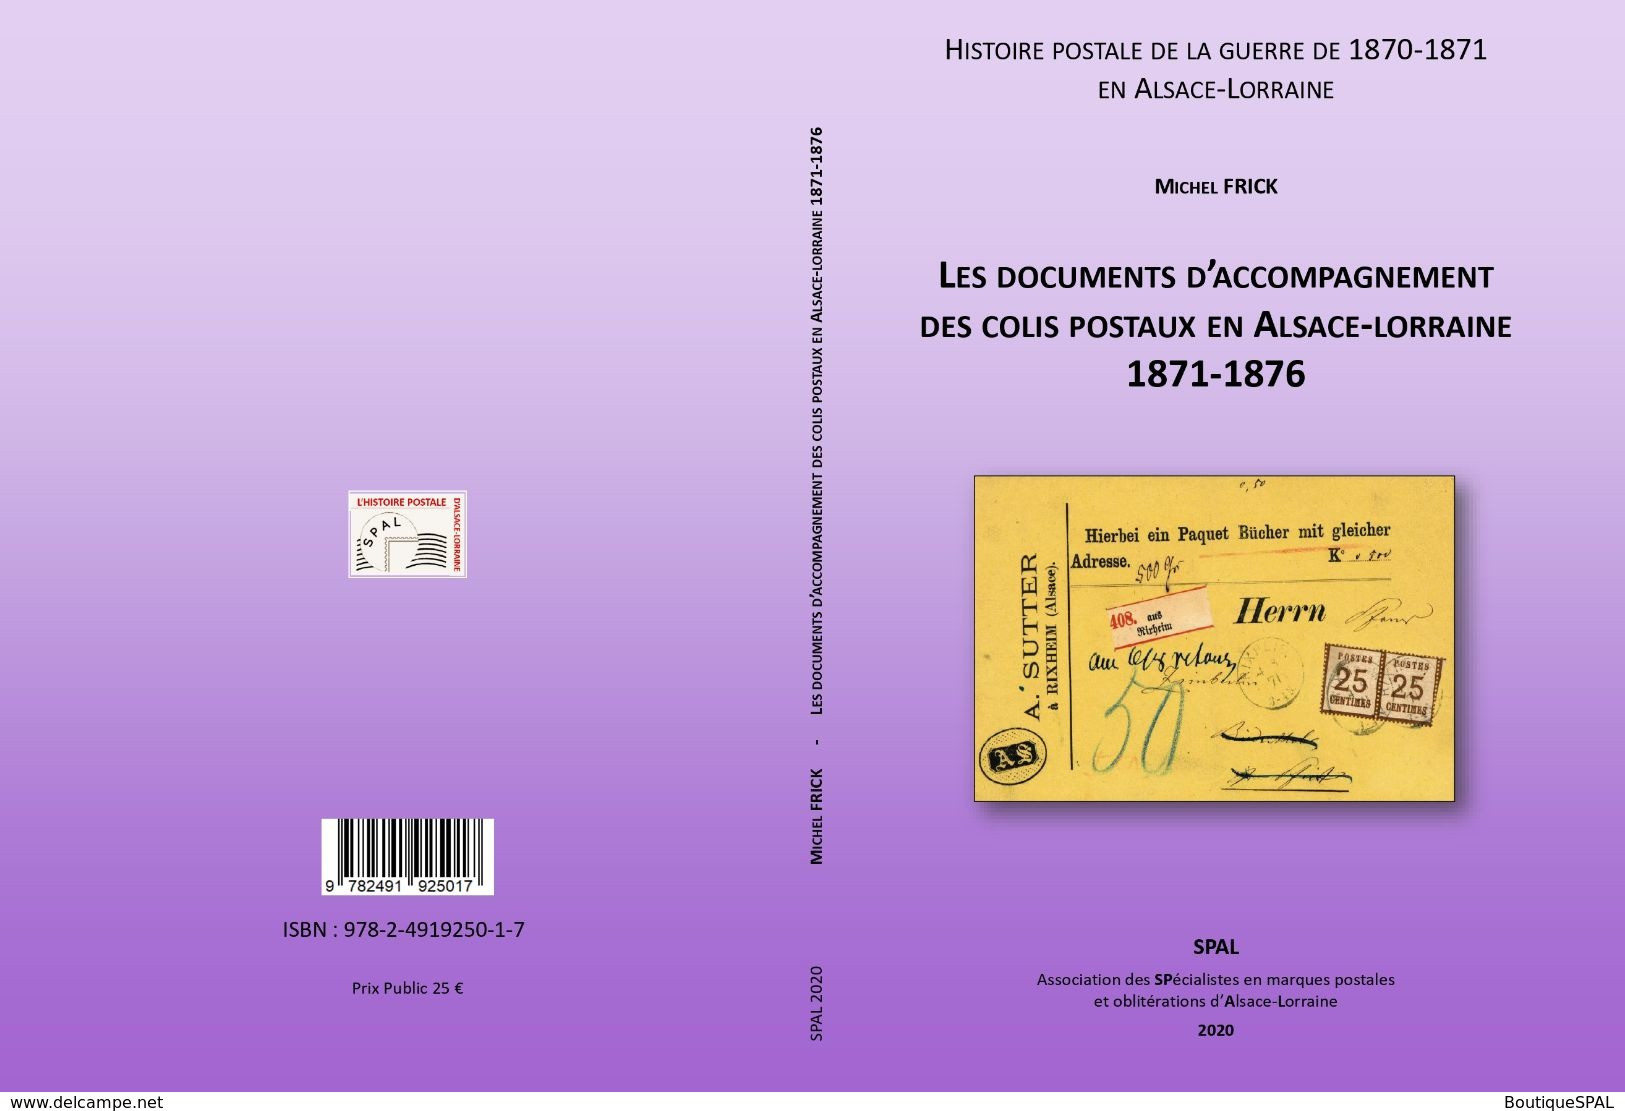 Les Documents D'accompagnement Des Colis Postaux D'Alsace-Lorraine 1871-1876 - Elsass Lothringen - SPAL 2020 - Militaire Post & Postgeschiedenis